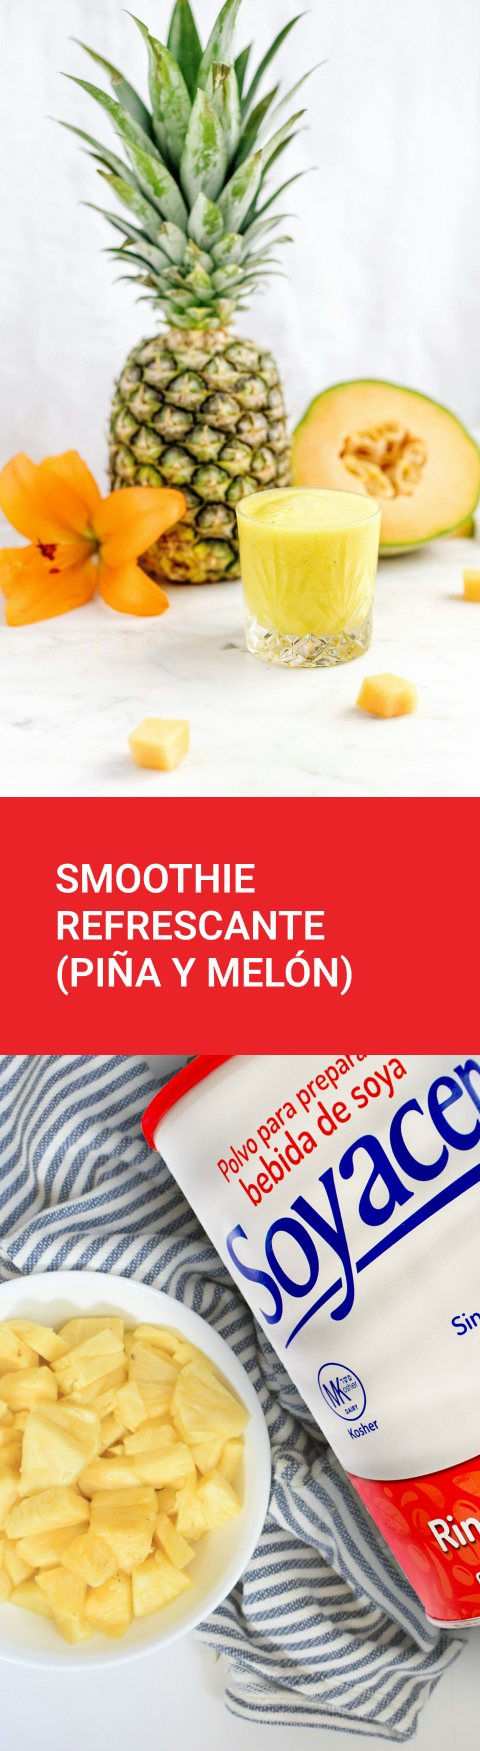 Receta de smoothie refrescante (piña y melón) | Blog PRONACEN